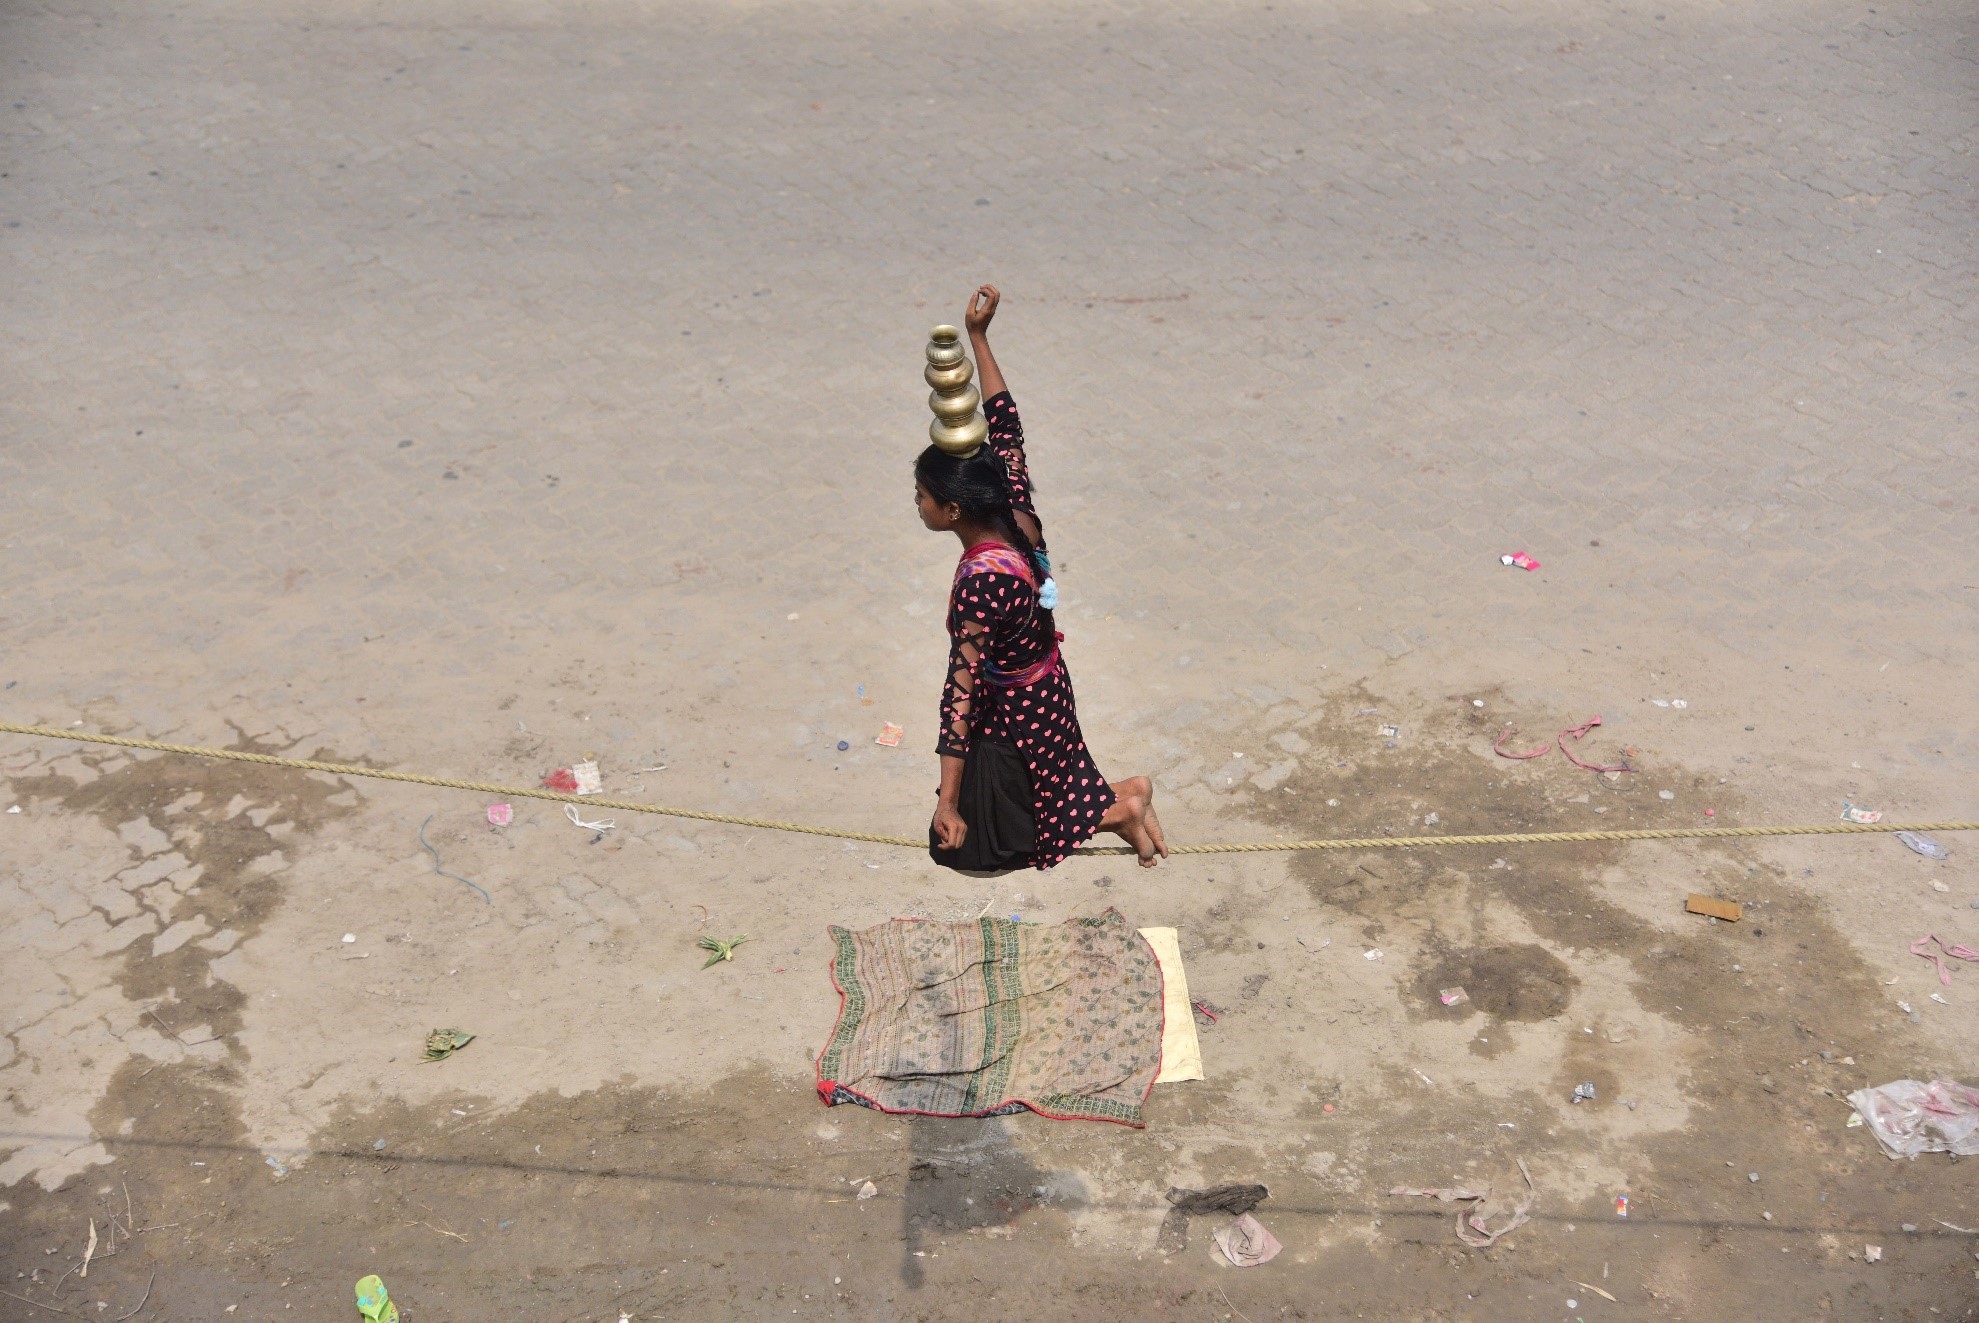 بھارت کی شمال مشرقی ریاست آسام کے ضلع ناگاؤں میں اسٹریٹ شو کے دوران ایک لڑکی رسی پر توازن برقراررکھنے کا مظاہرہ کر رہی ہے۔(شِنہوا)